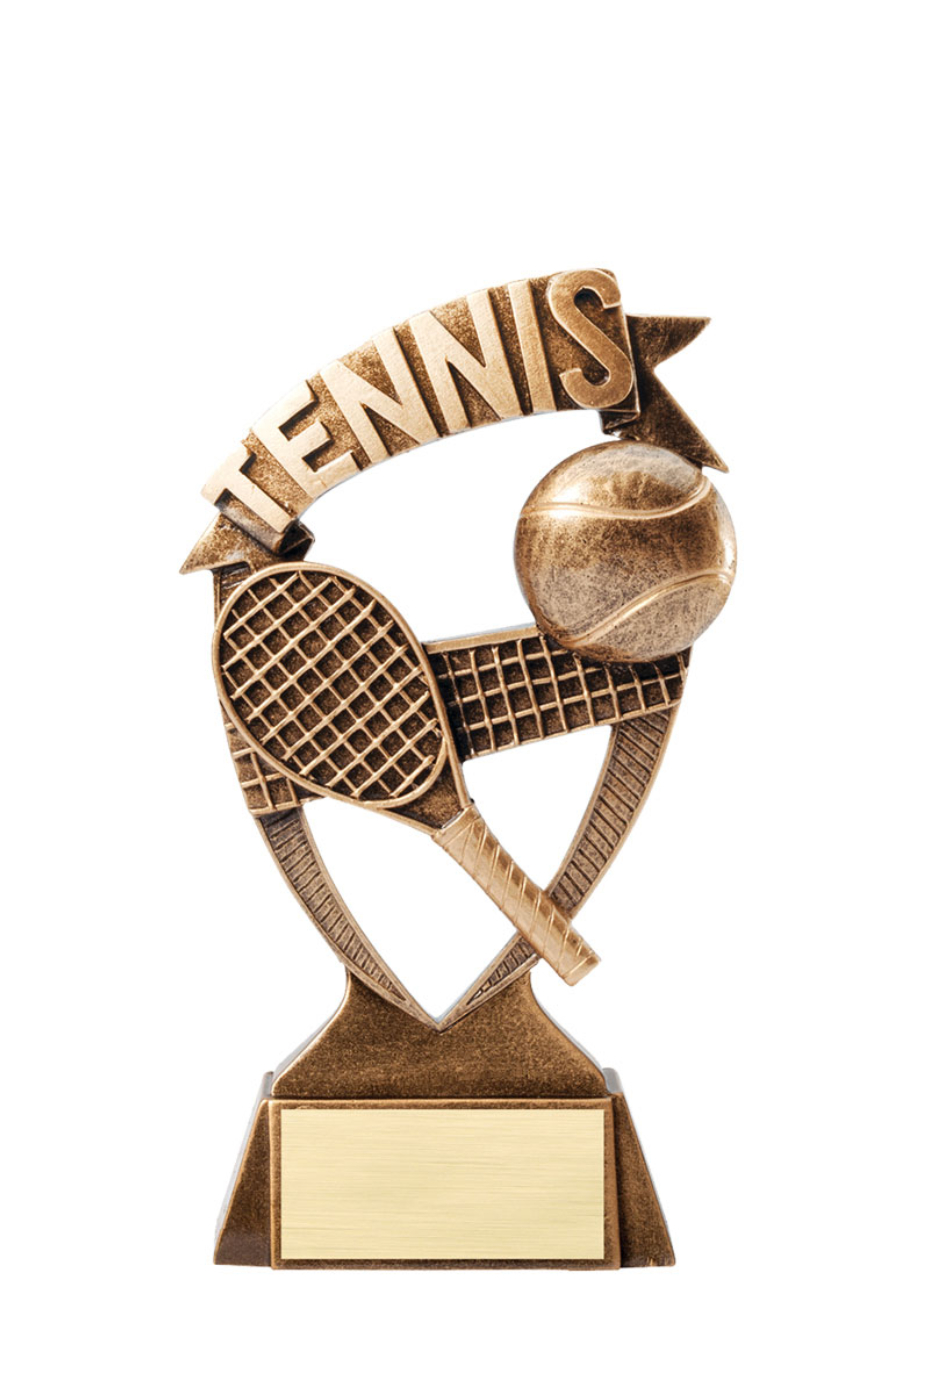 USTA TENNIS - Racquet, Ball and Net Resin